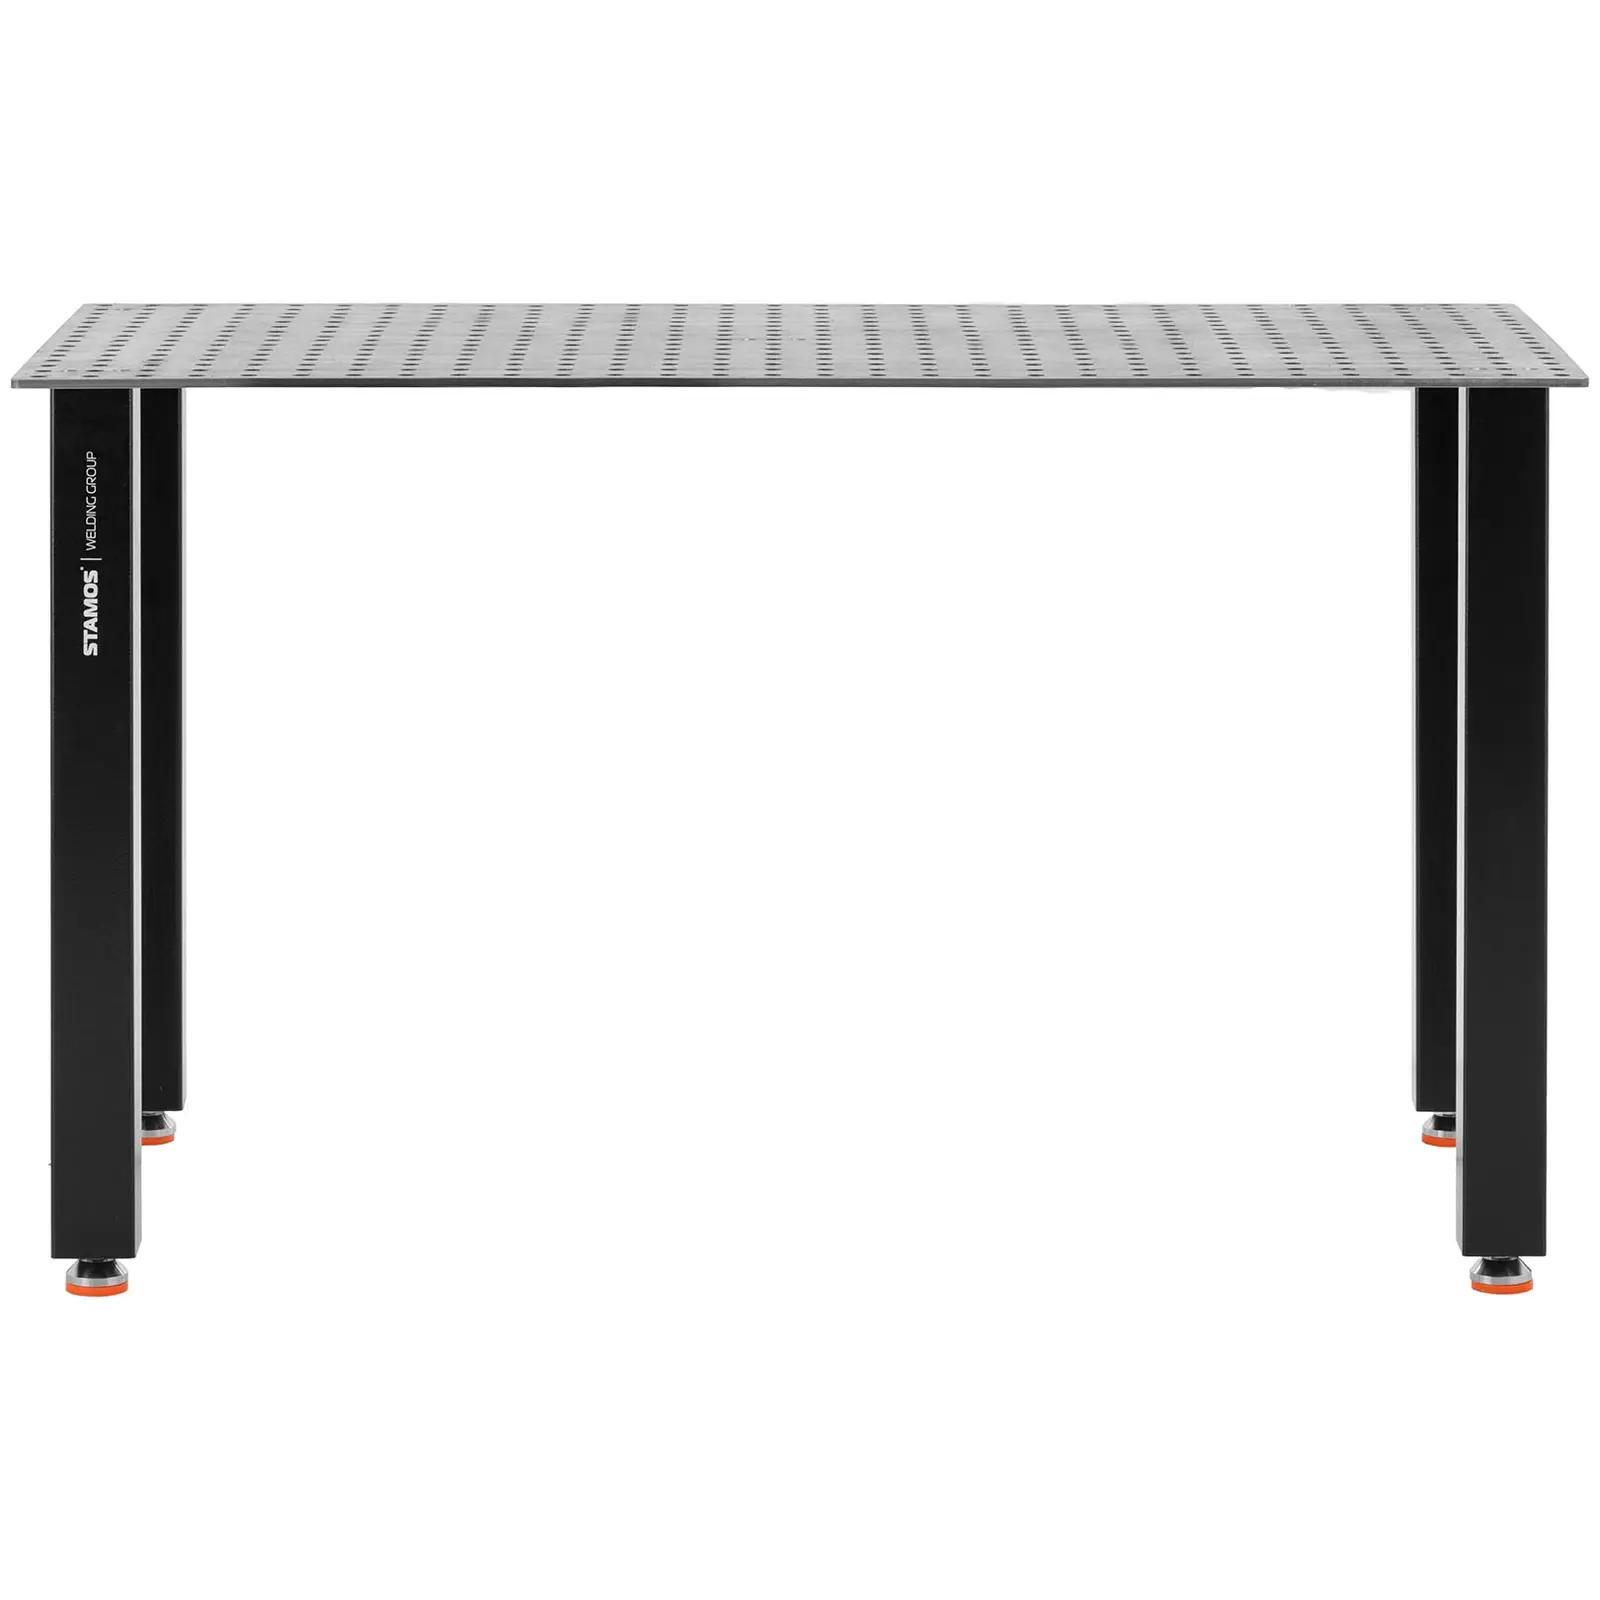 Hegesztő asztal - 200 kg - 150 x 100 cm